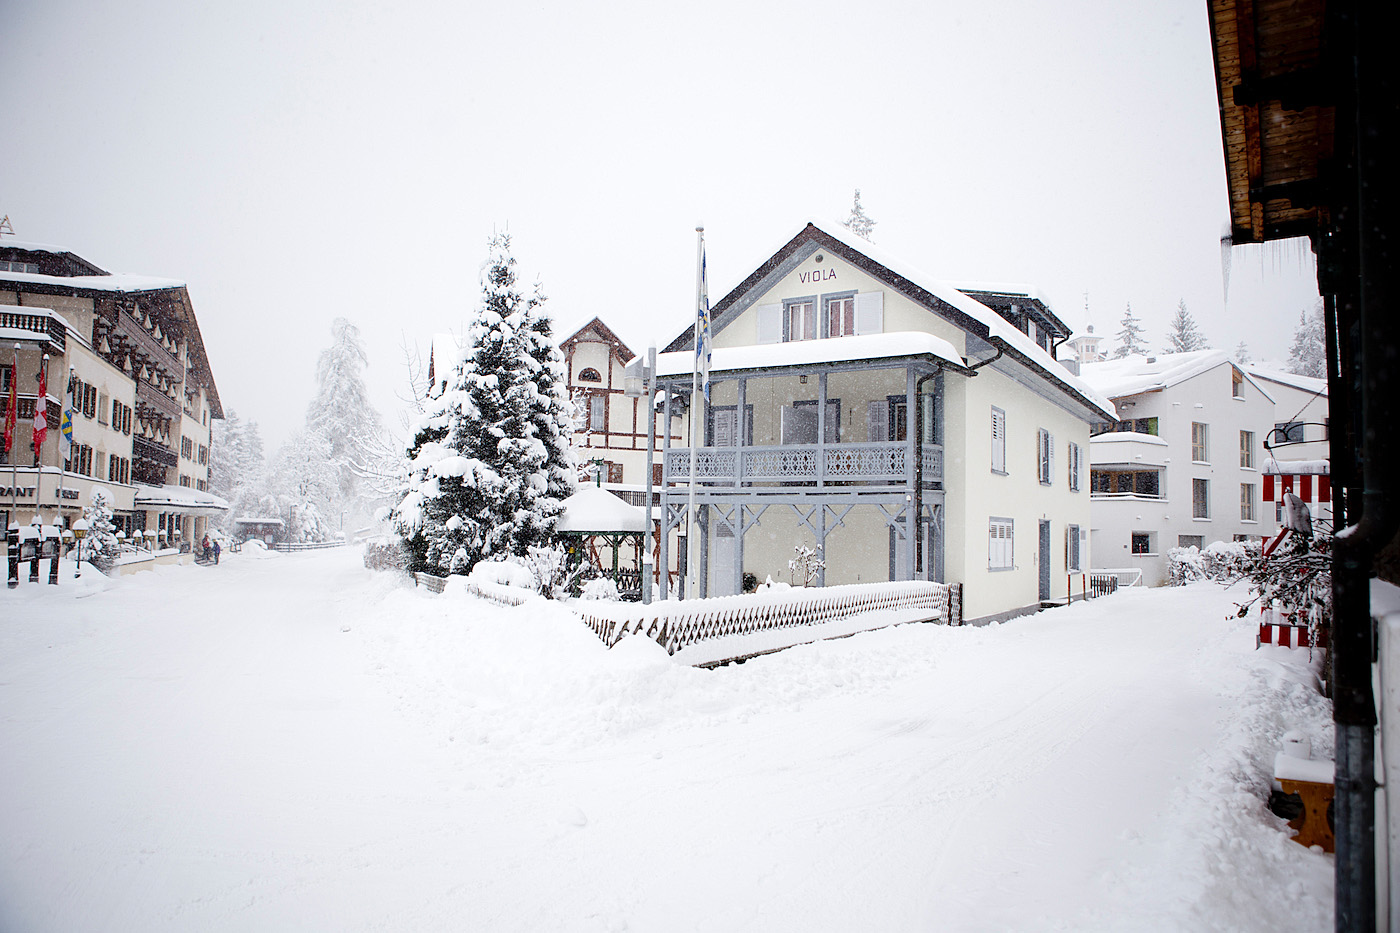 Kulinarik Trail Laax / Flims | Skigebiet LAAX, LAAXisniceyo, Graubünden, skiing in LAAX, culinary trail LAAX/Flims, ski weekend LAAX, winter holiday, winter in Switzerland